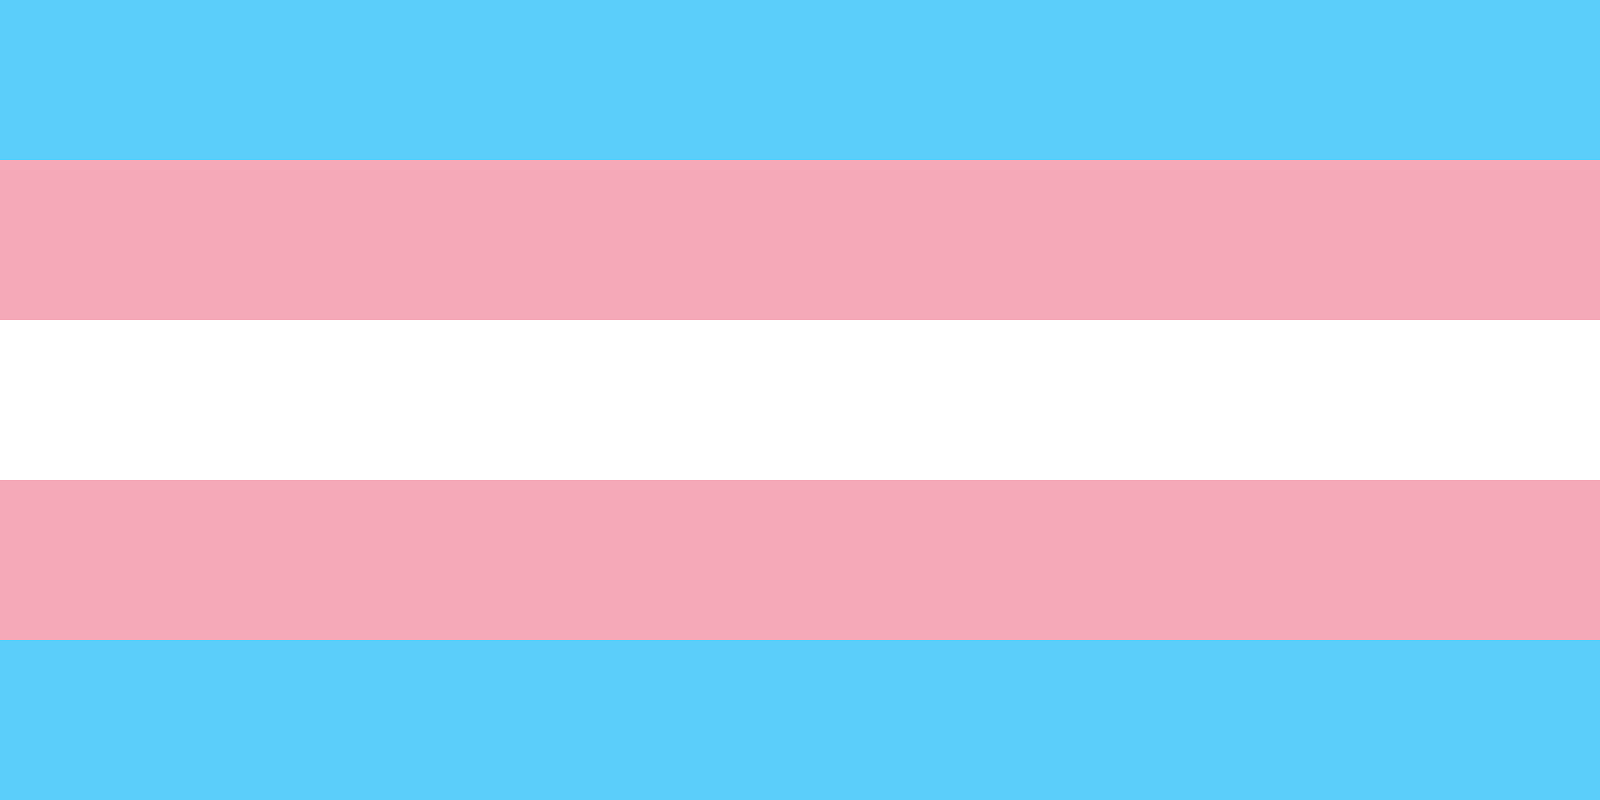 50+ Transgender Pride Wallpaper on WallpaperSafari